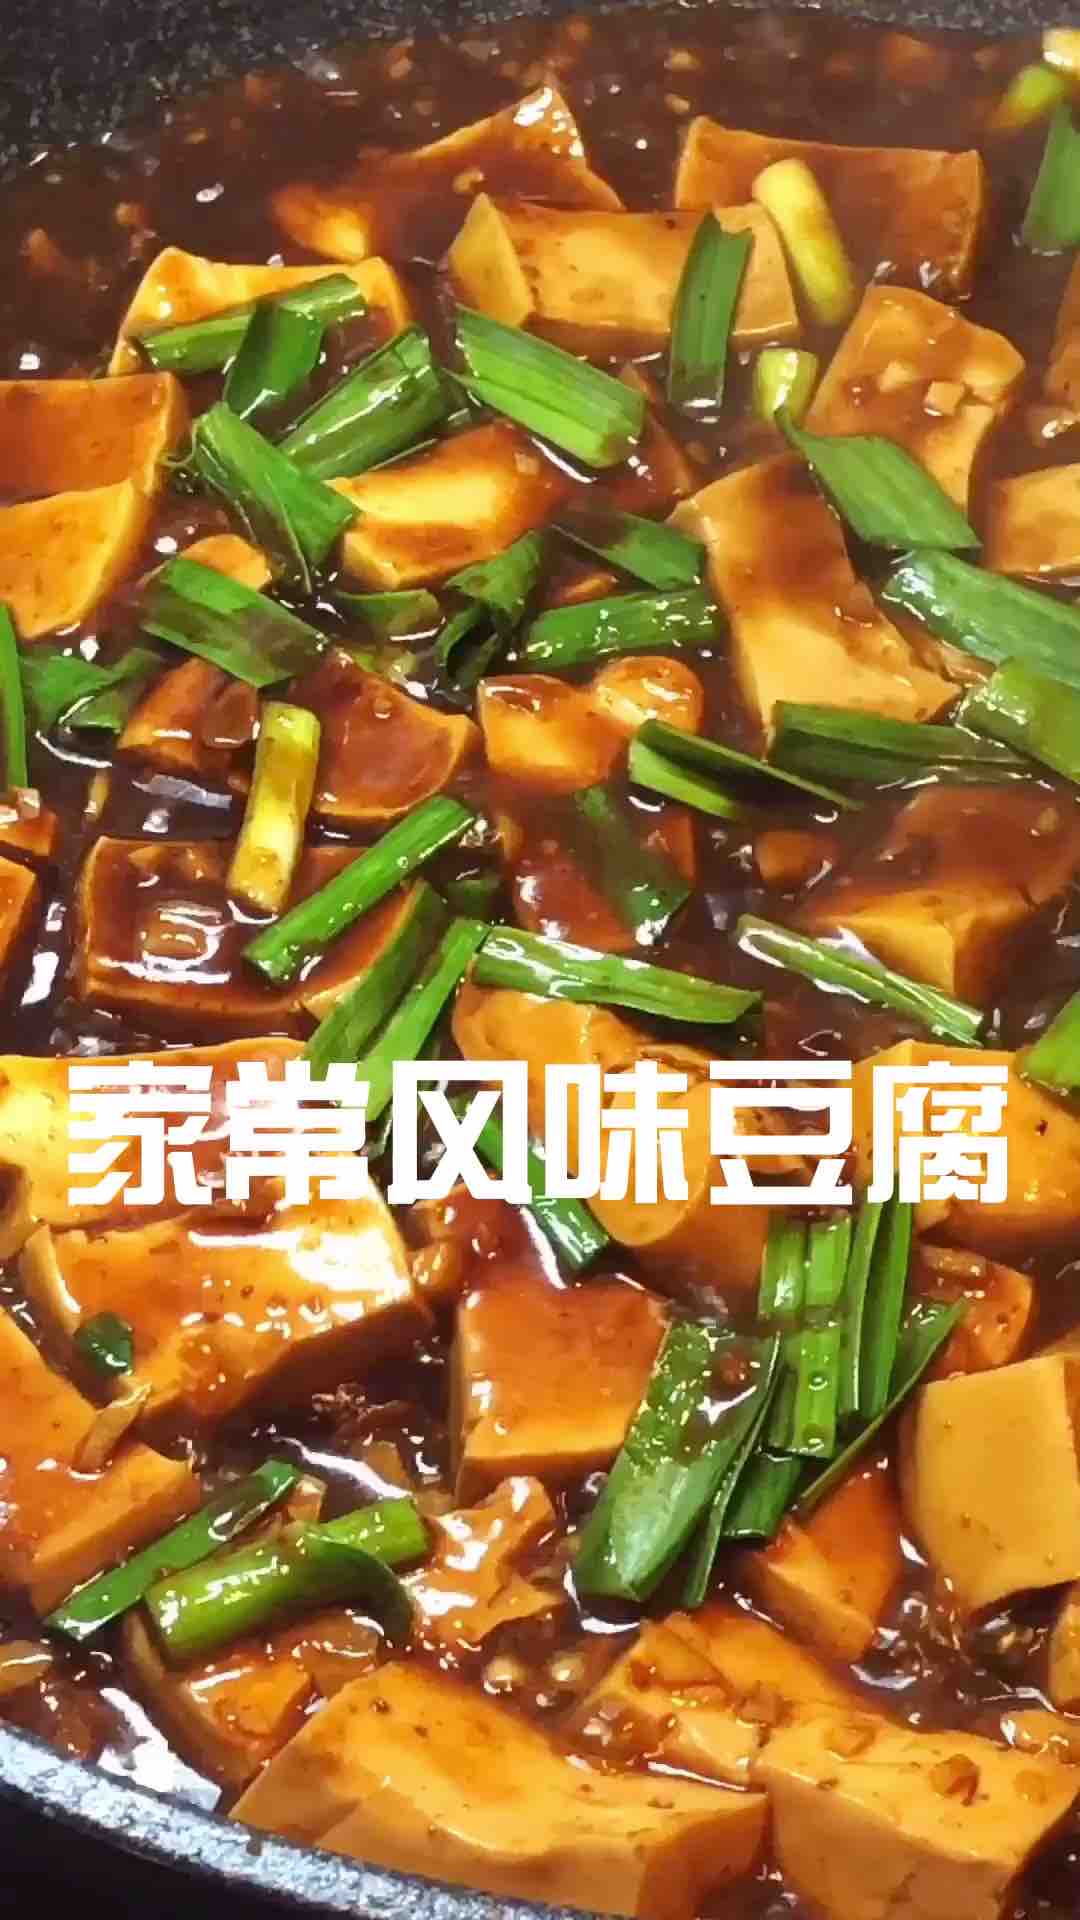 Home-style Tofu